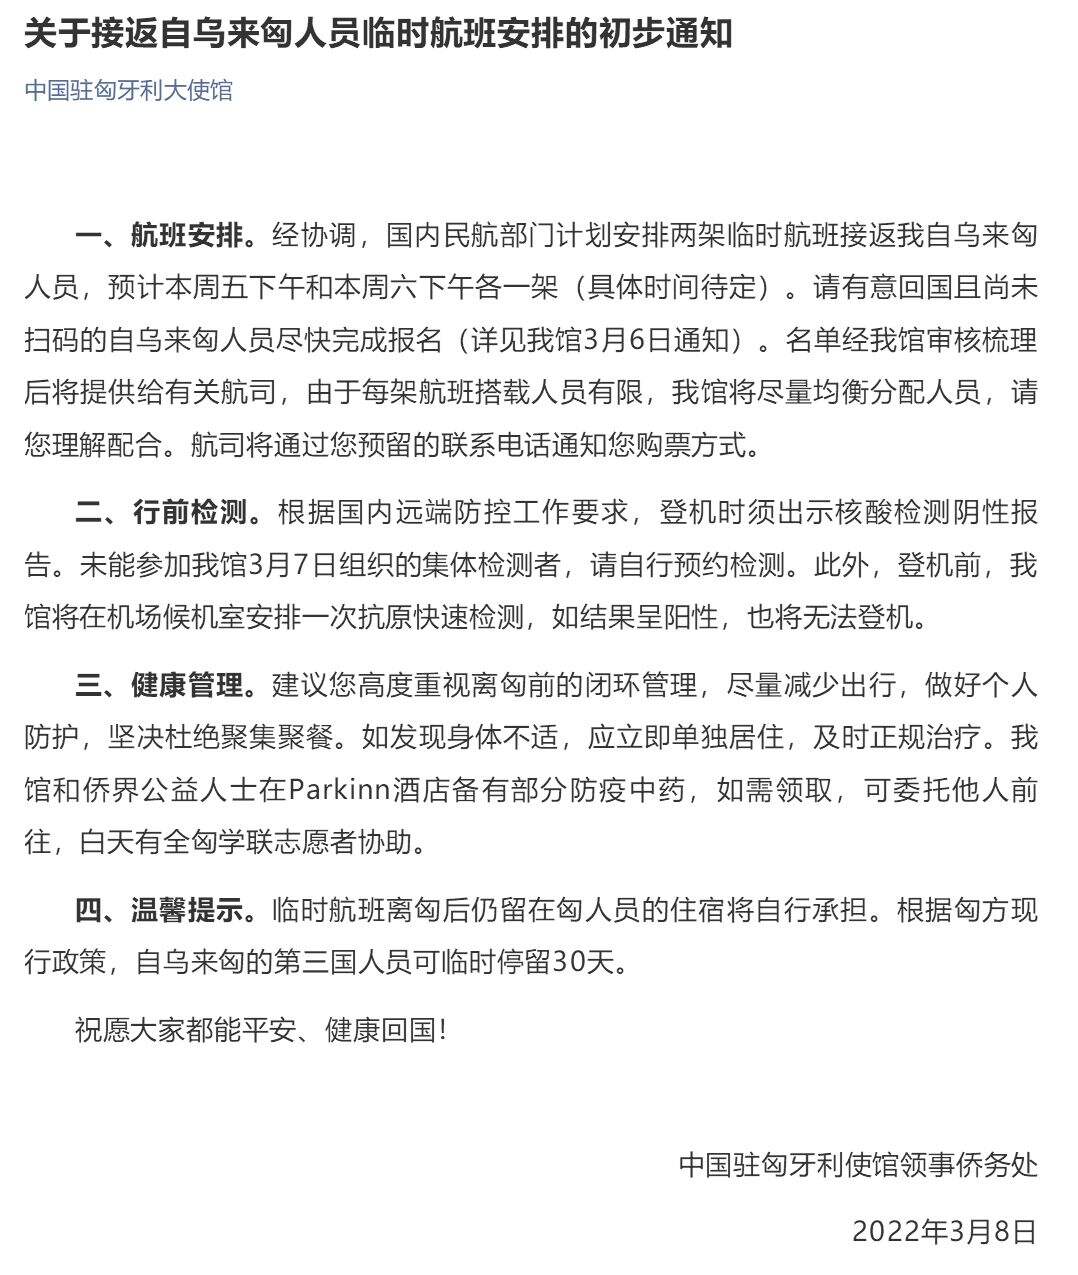 中国驻匈牙利大使馆发布关于回国临时航班相关信息